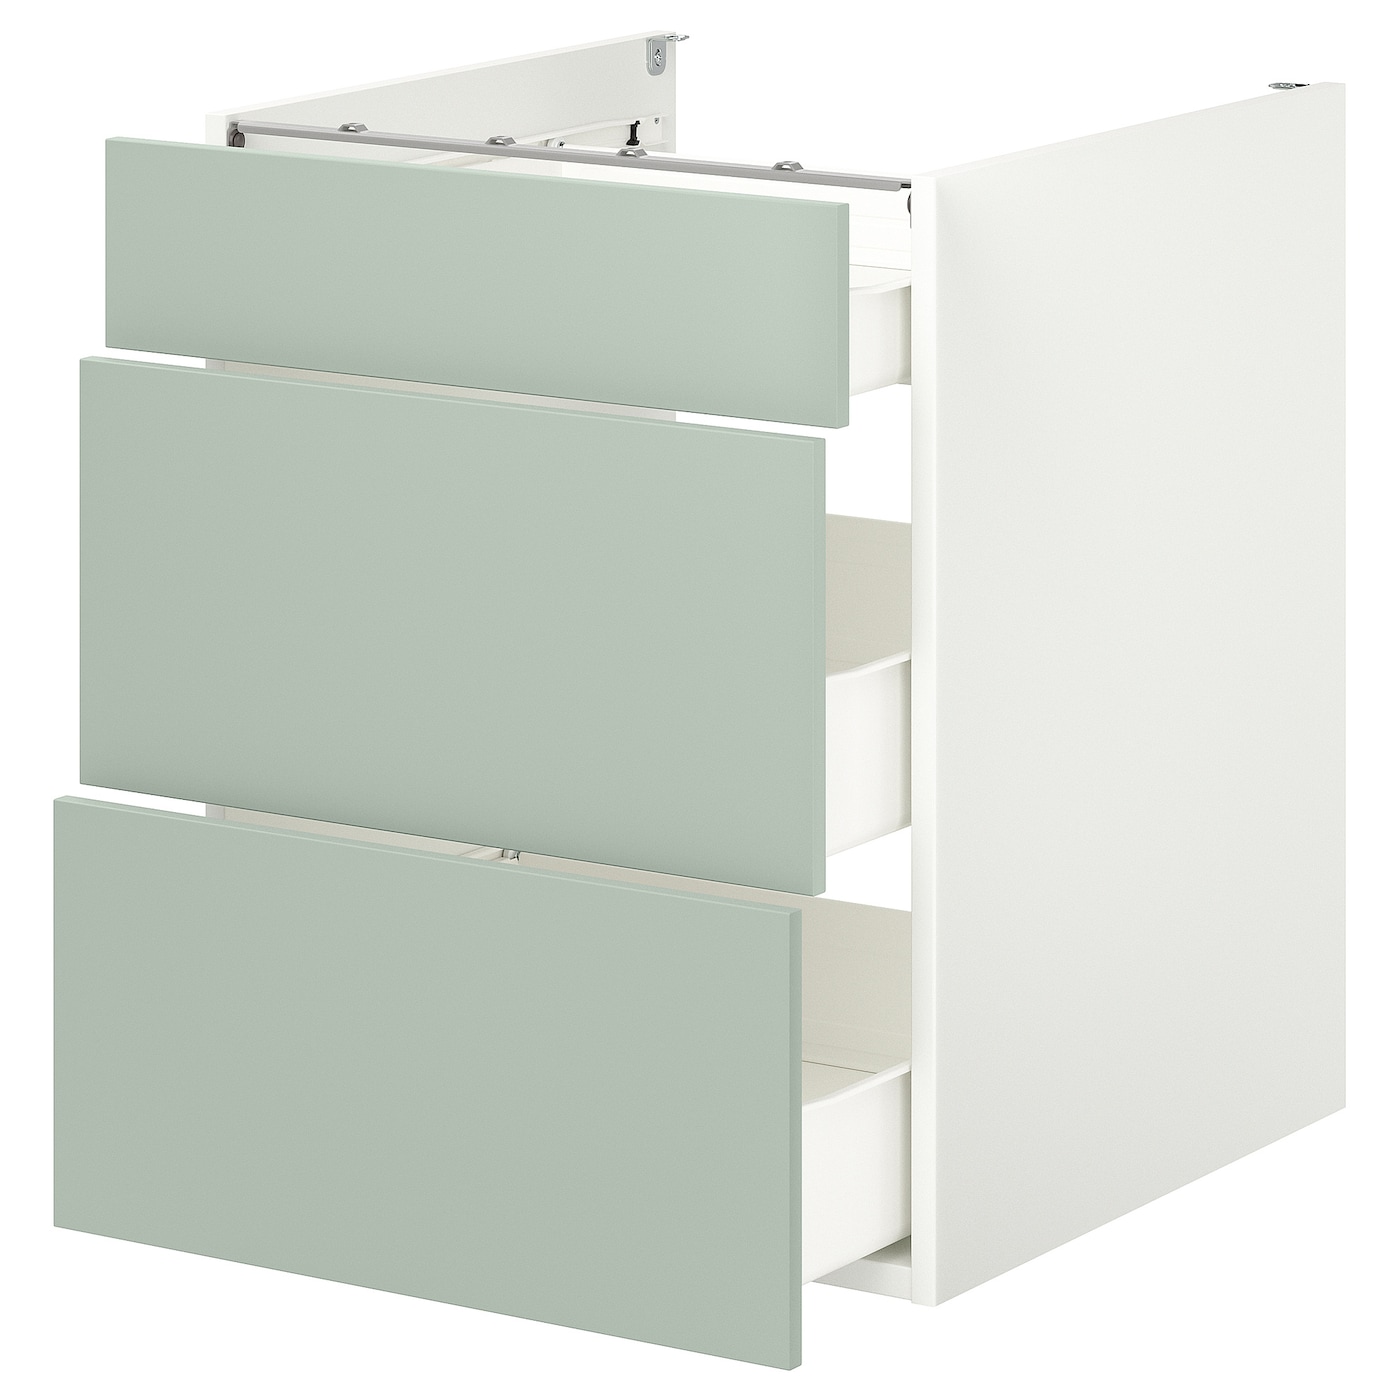 Напольный шкаф с ящиками - IKEA ENHET, 75x62x60см, белый/светло-серый, ЭХНЕТ ИКЕА